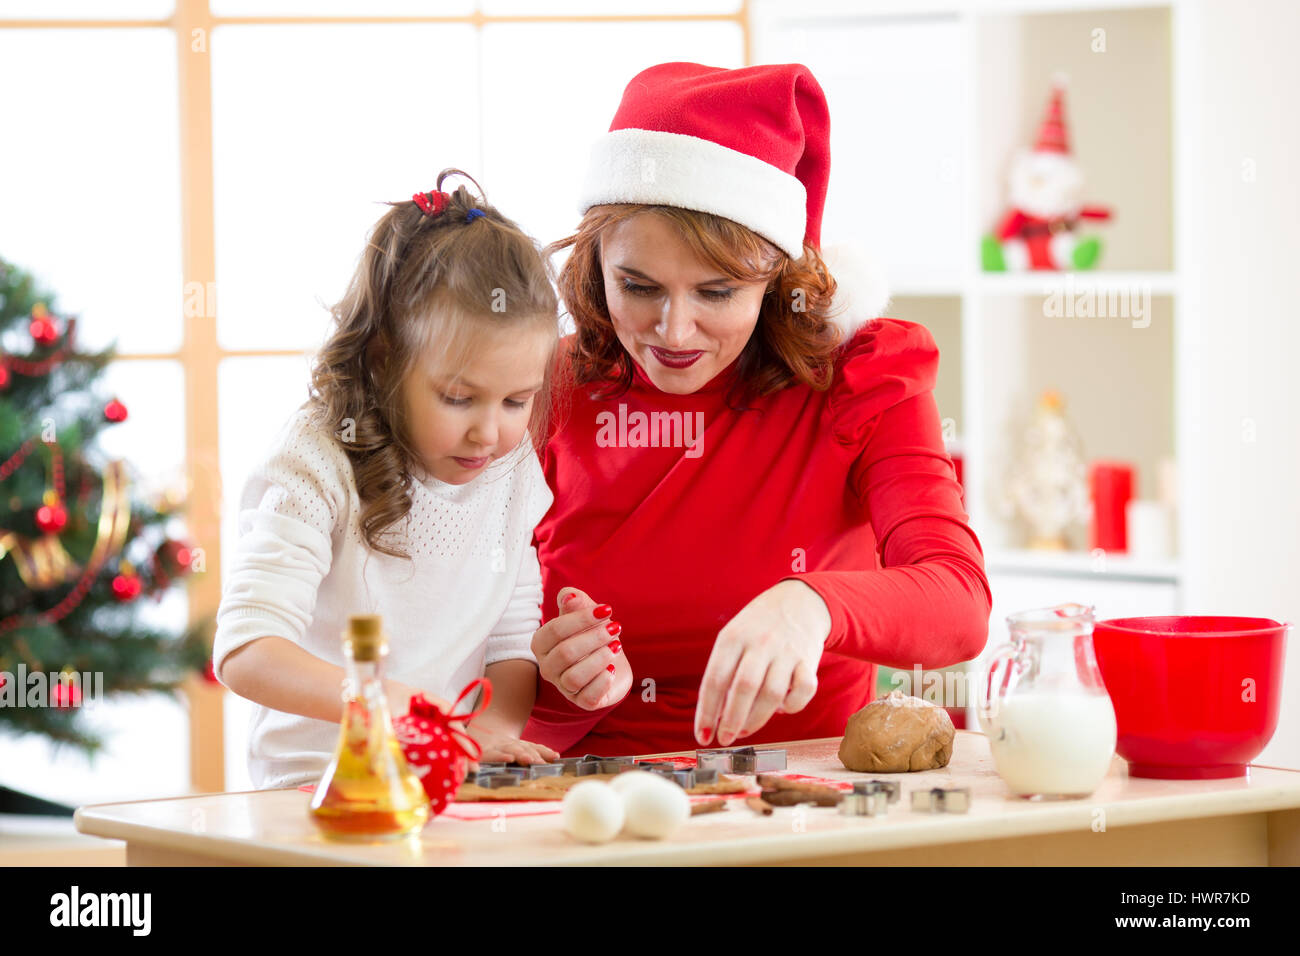 Capretto felice ragazza madre e la cottura X-mas cookie insieme alla festosa sala decorata Foto Stock